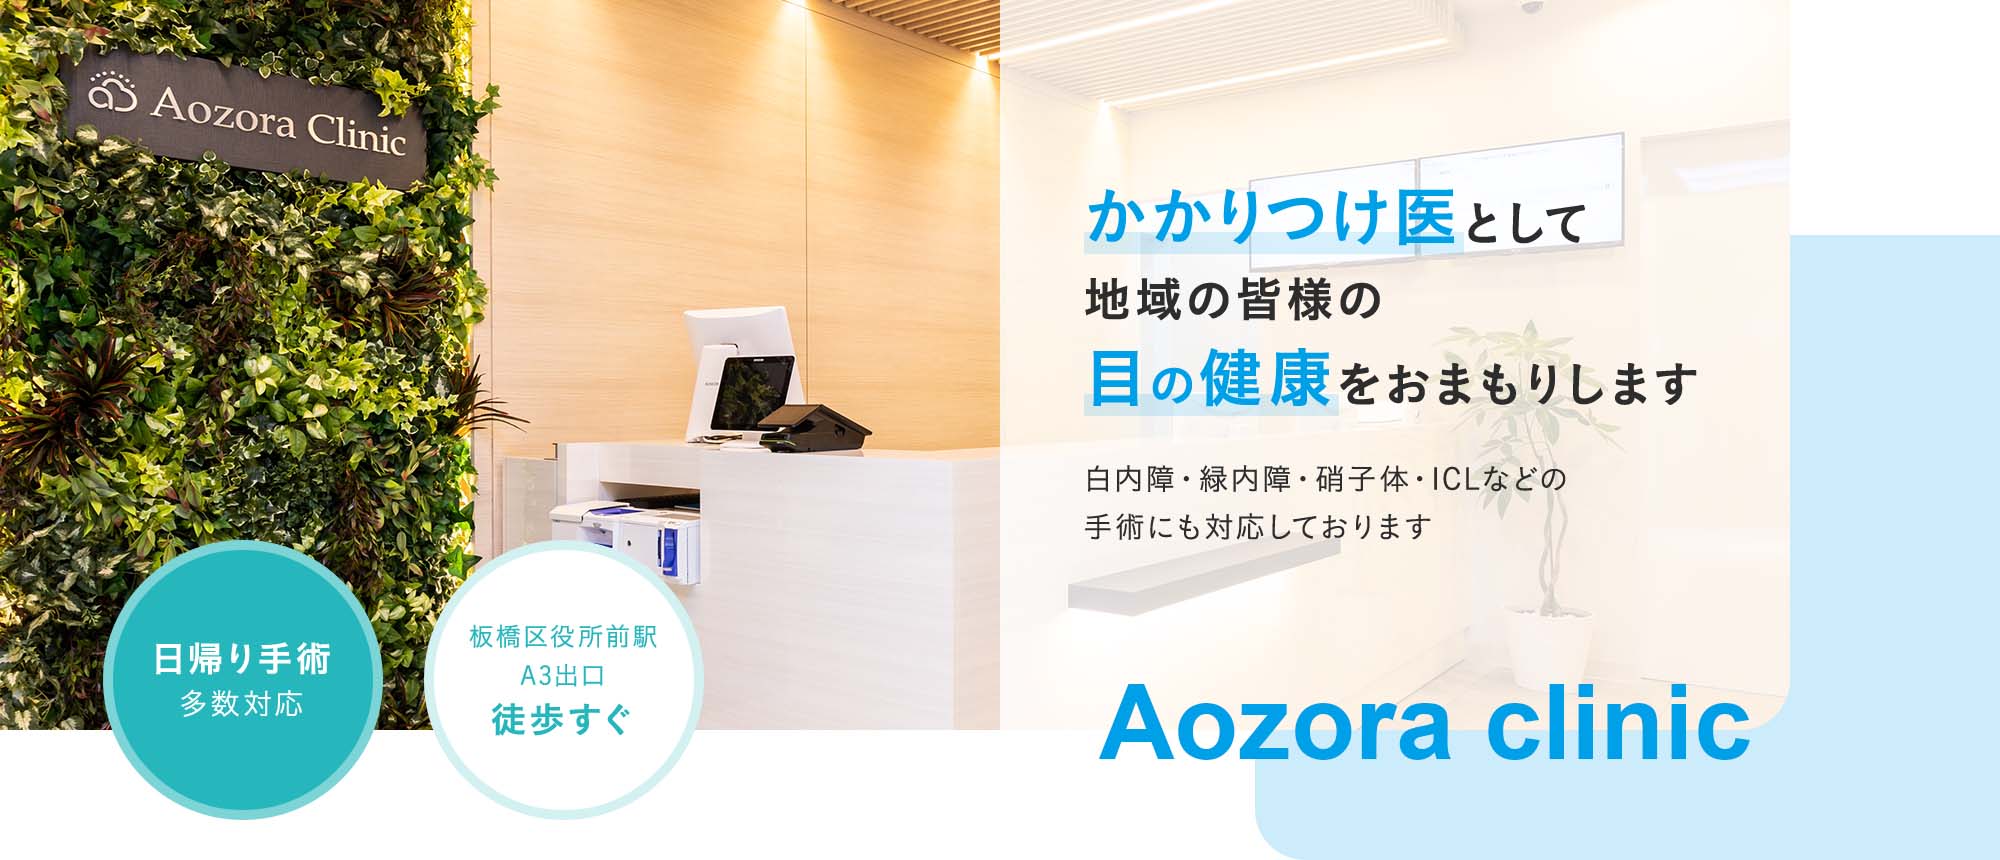 かかりつけ医として地域の皆様の 目の健康をおまもりします Aozora clinic